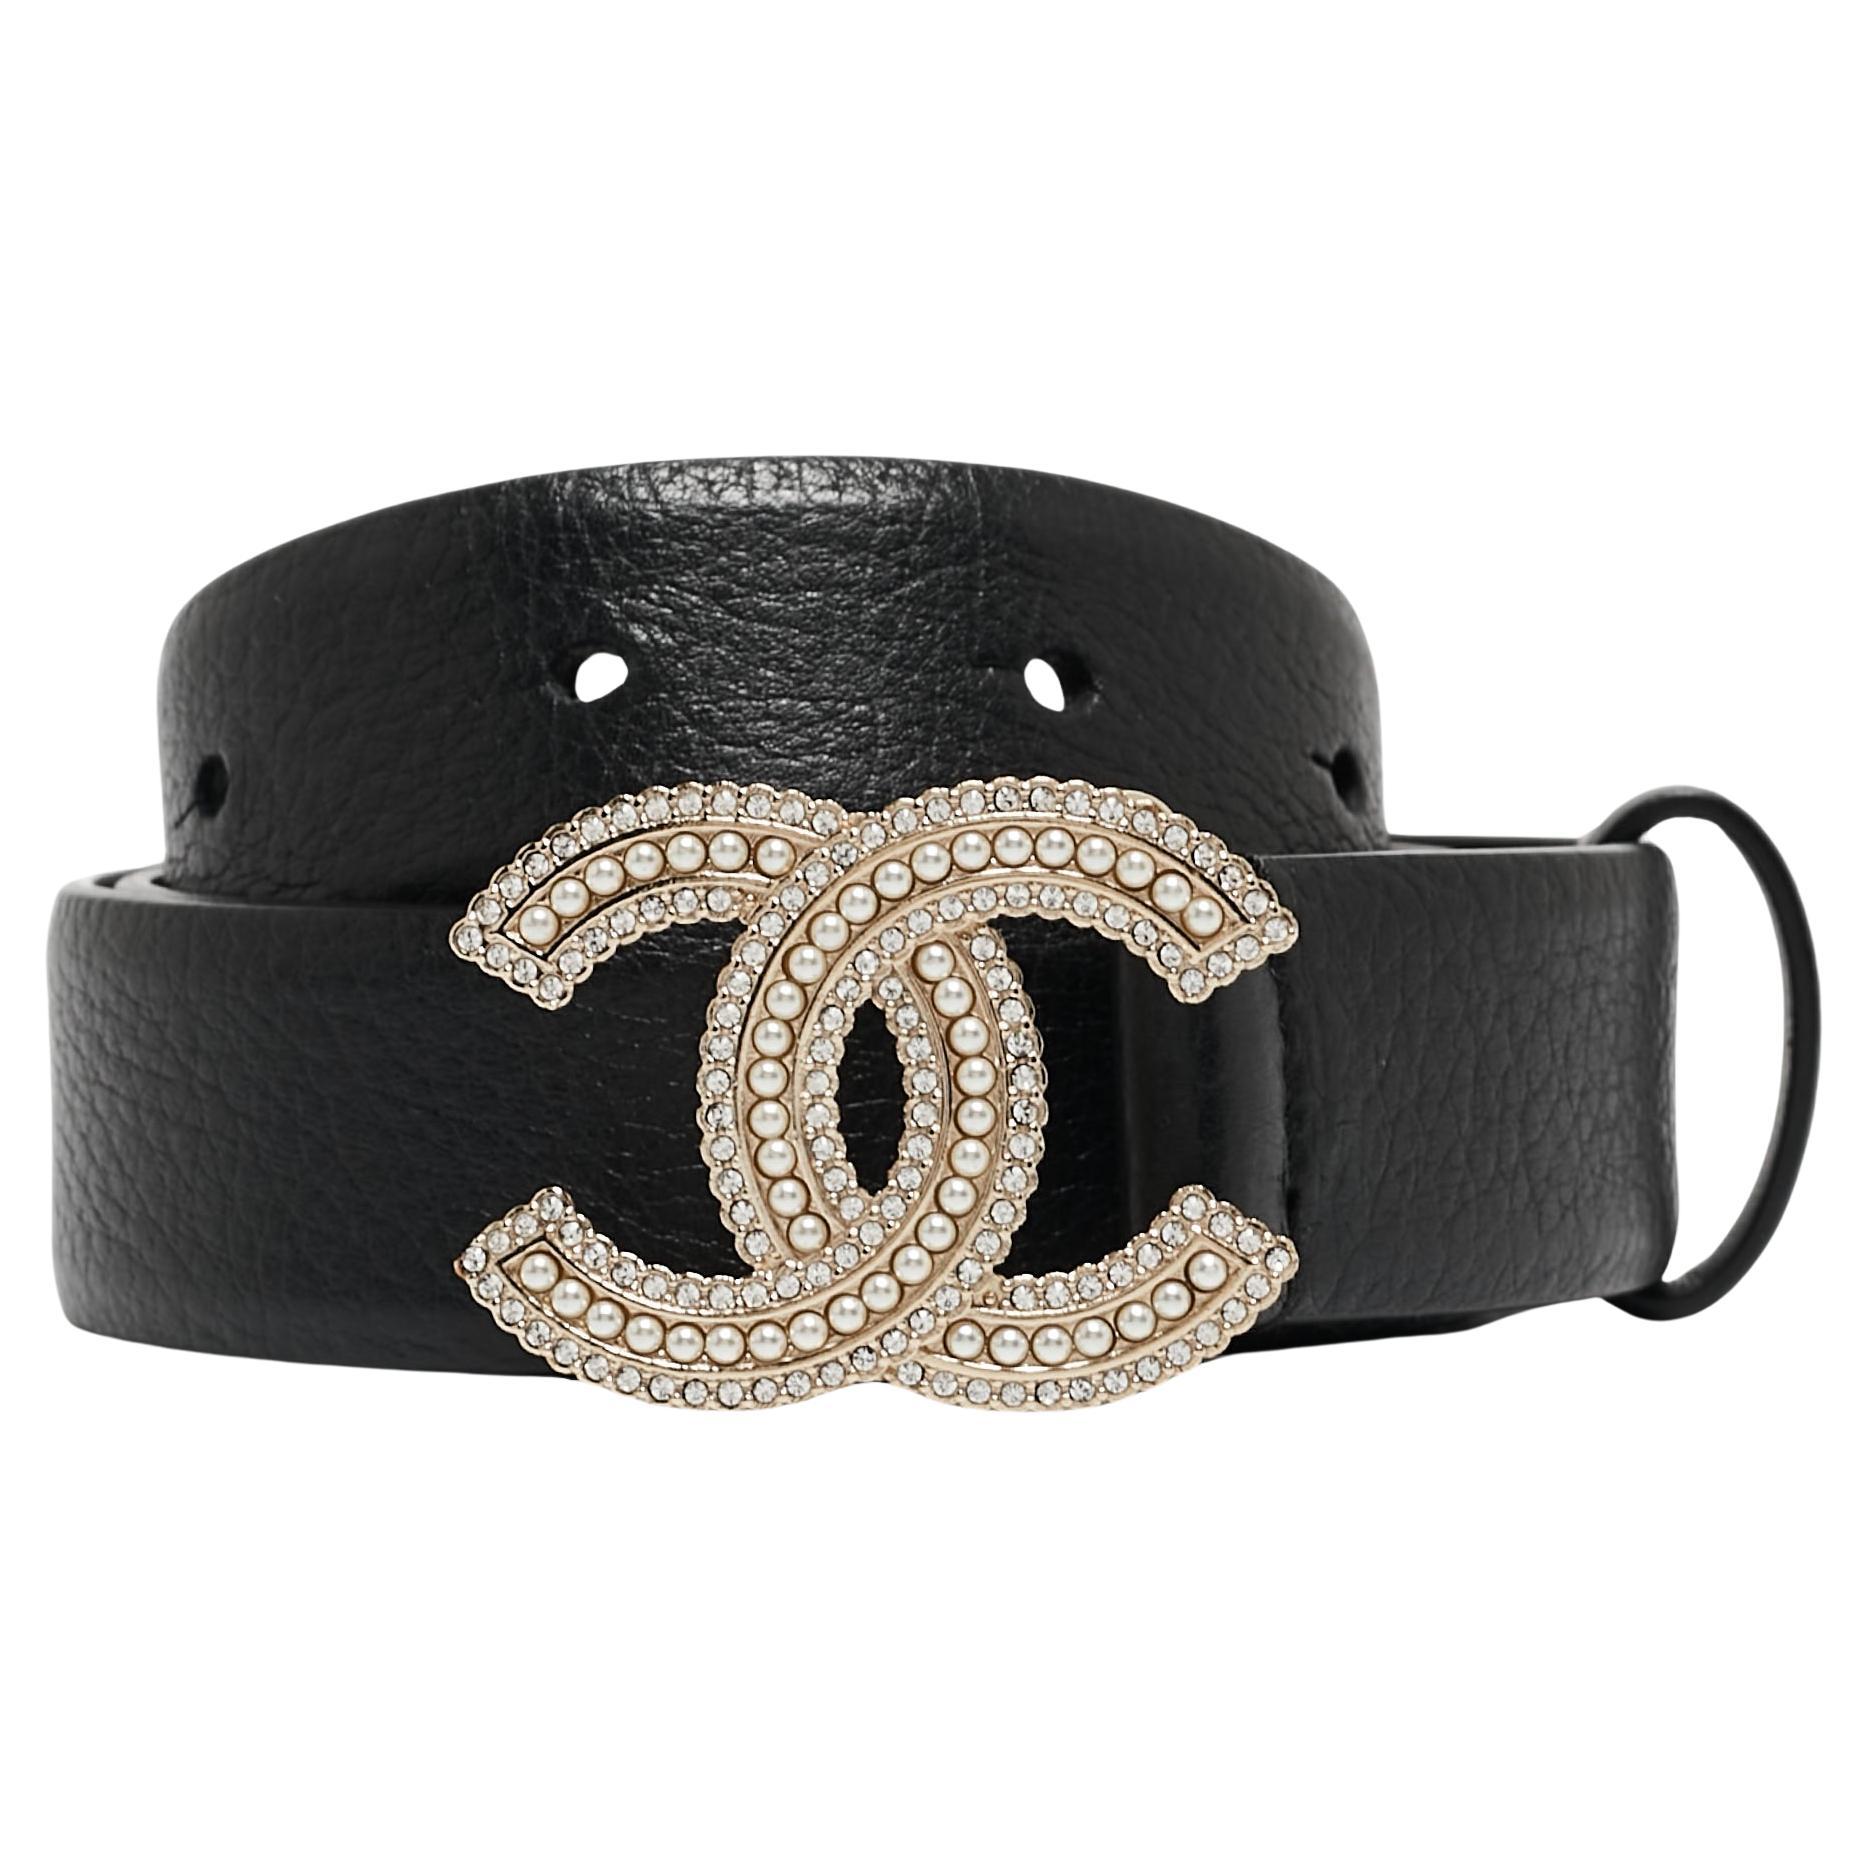 Chanel Black Leather CC Embellished Buckle Belt 90 CM